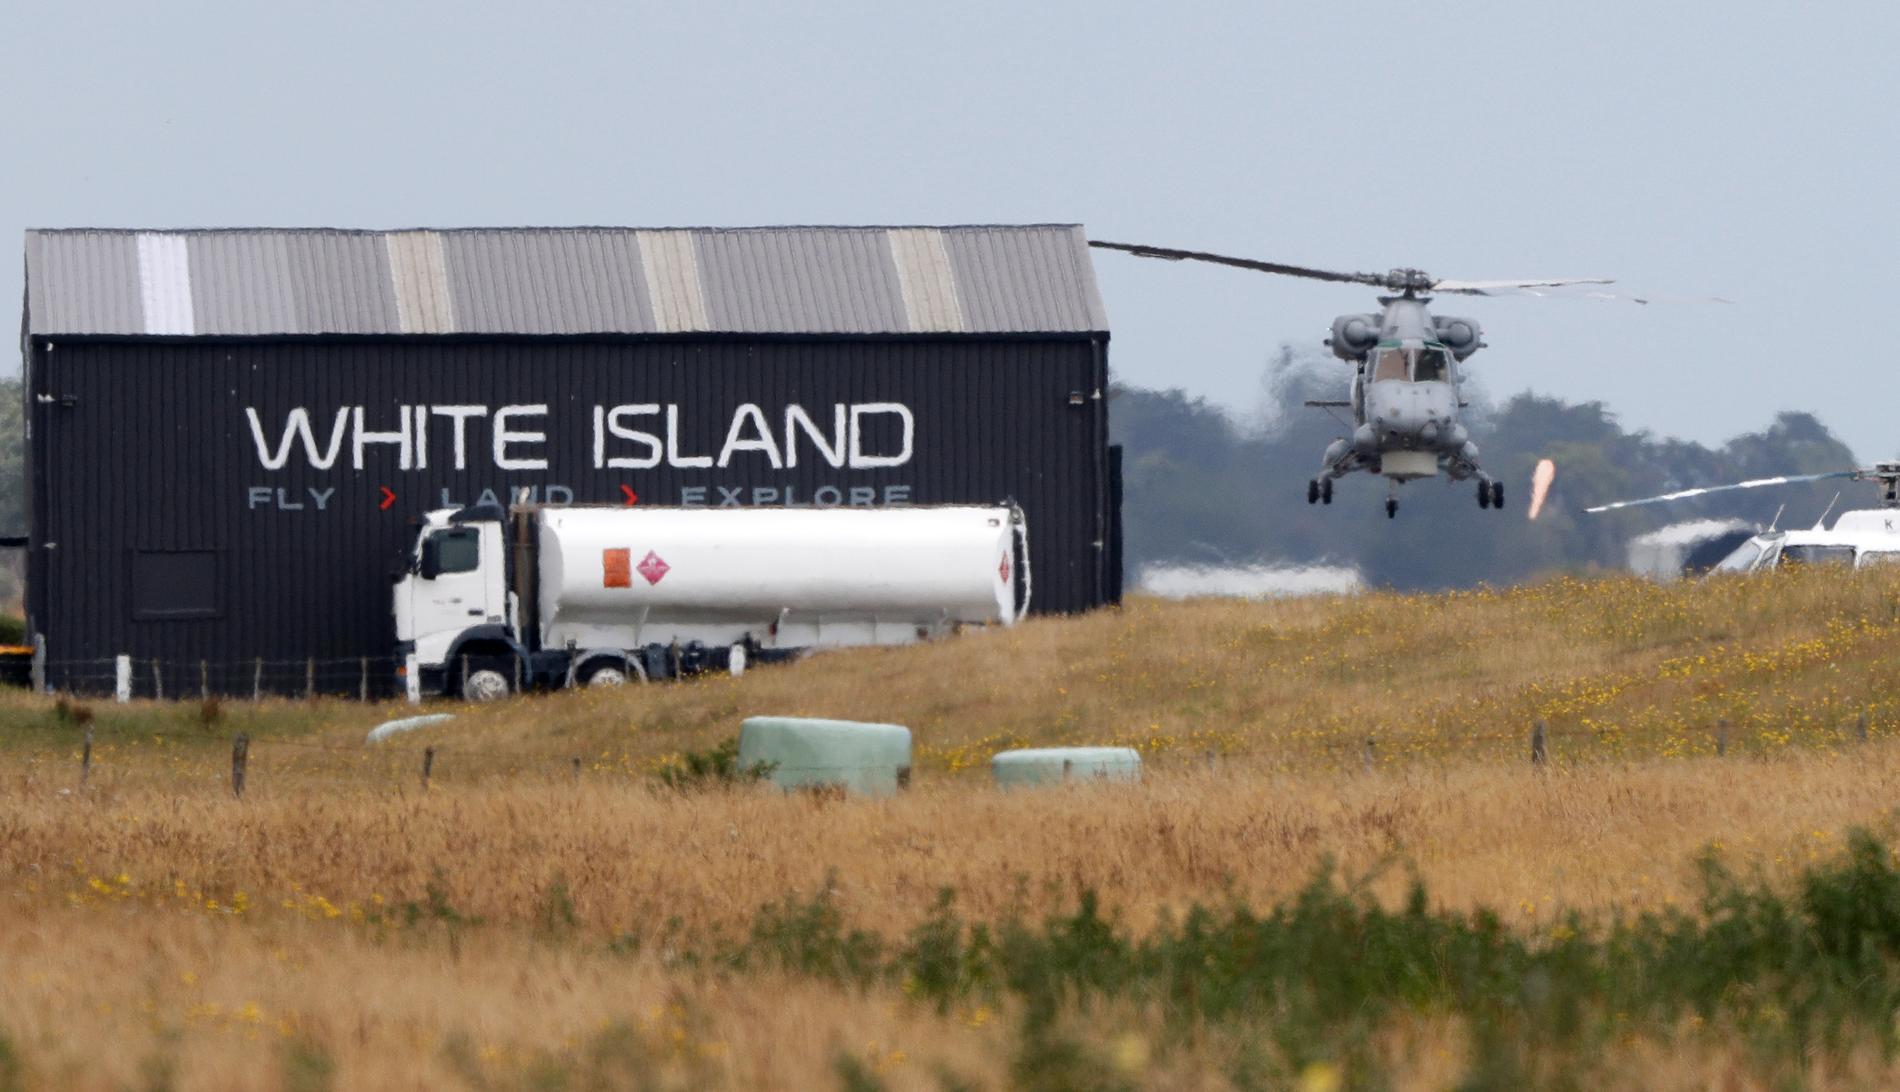 En helikopter tillhörande flottan i samband med uppdraget att återföra kropparna som blev kvar på White Island efter vulkanutbrottet.